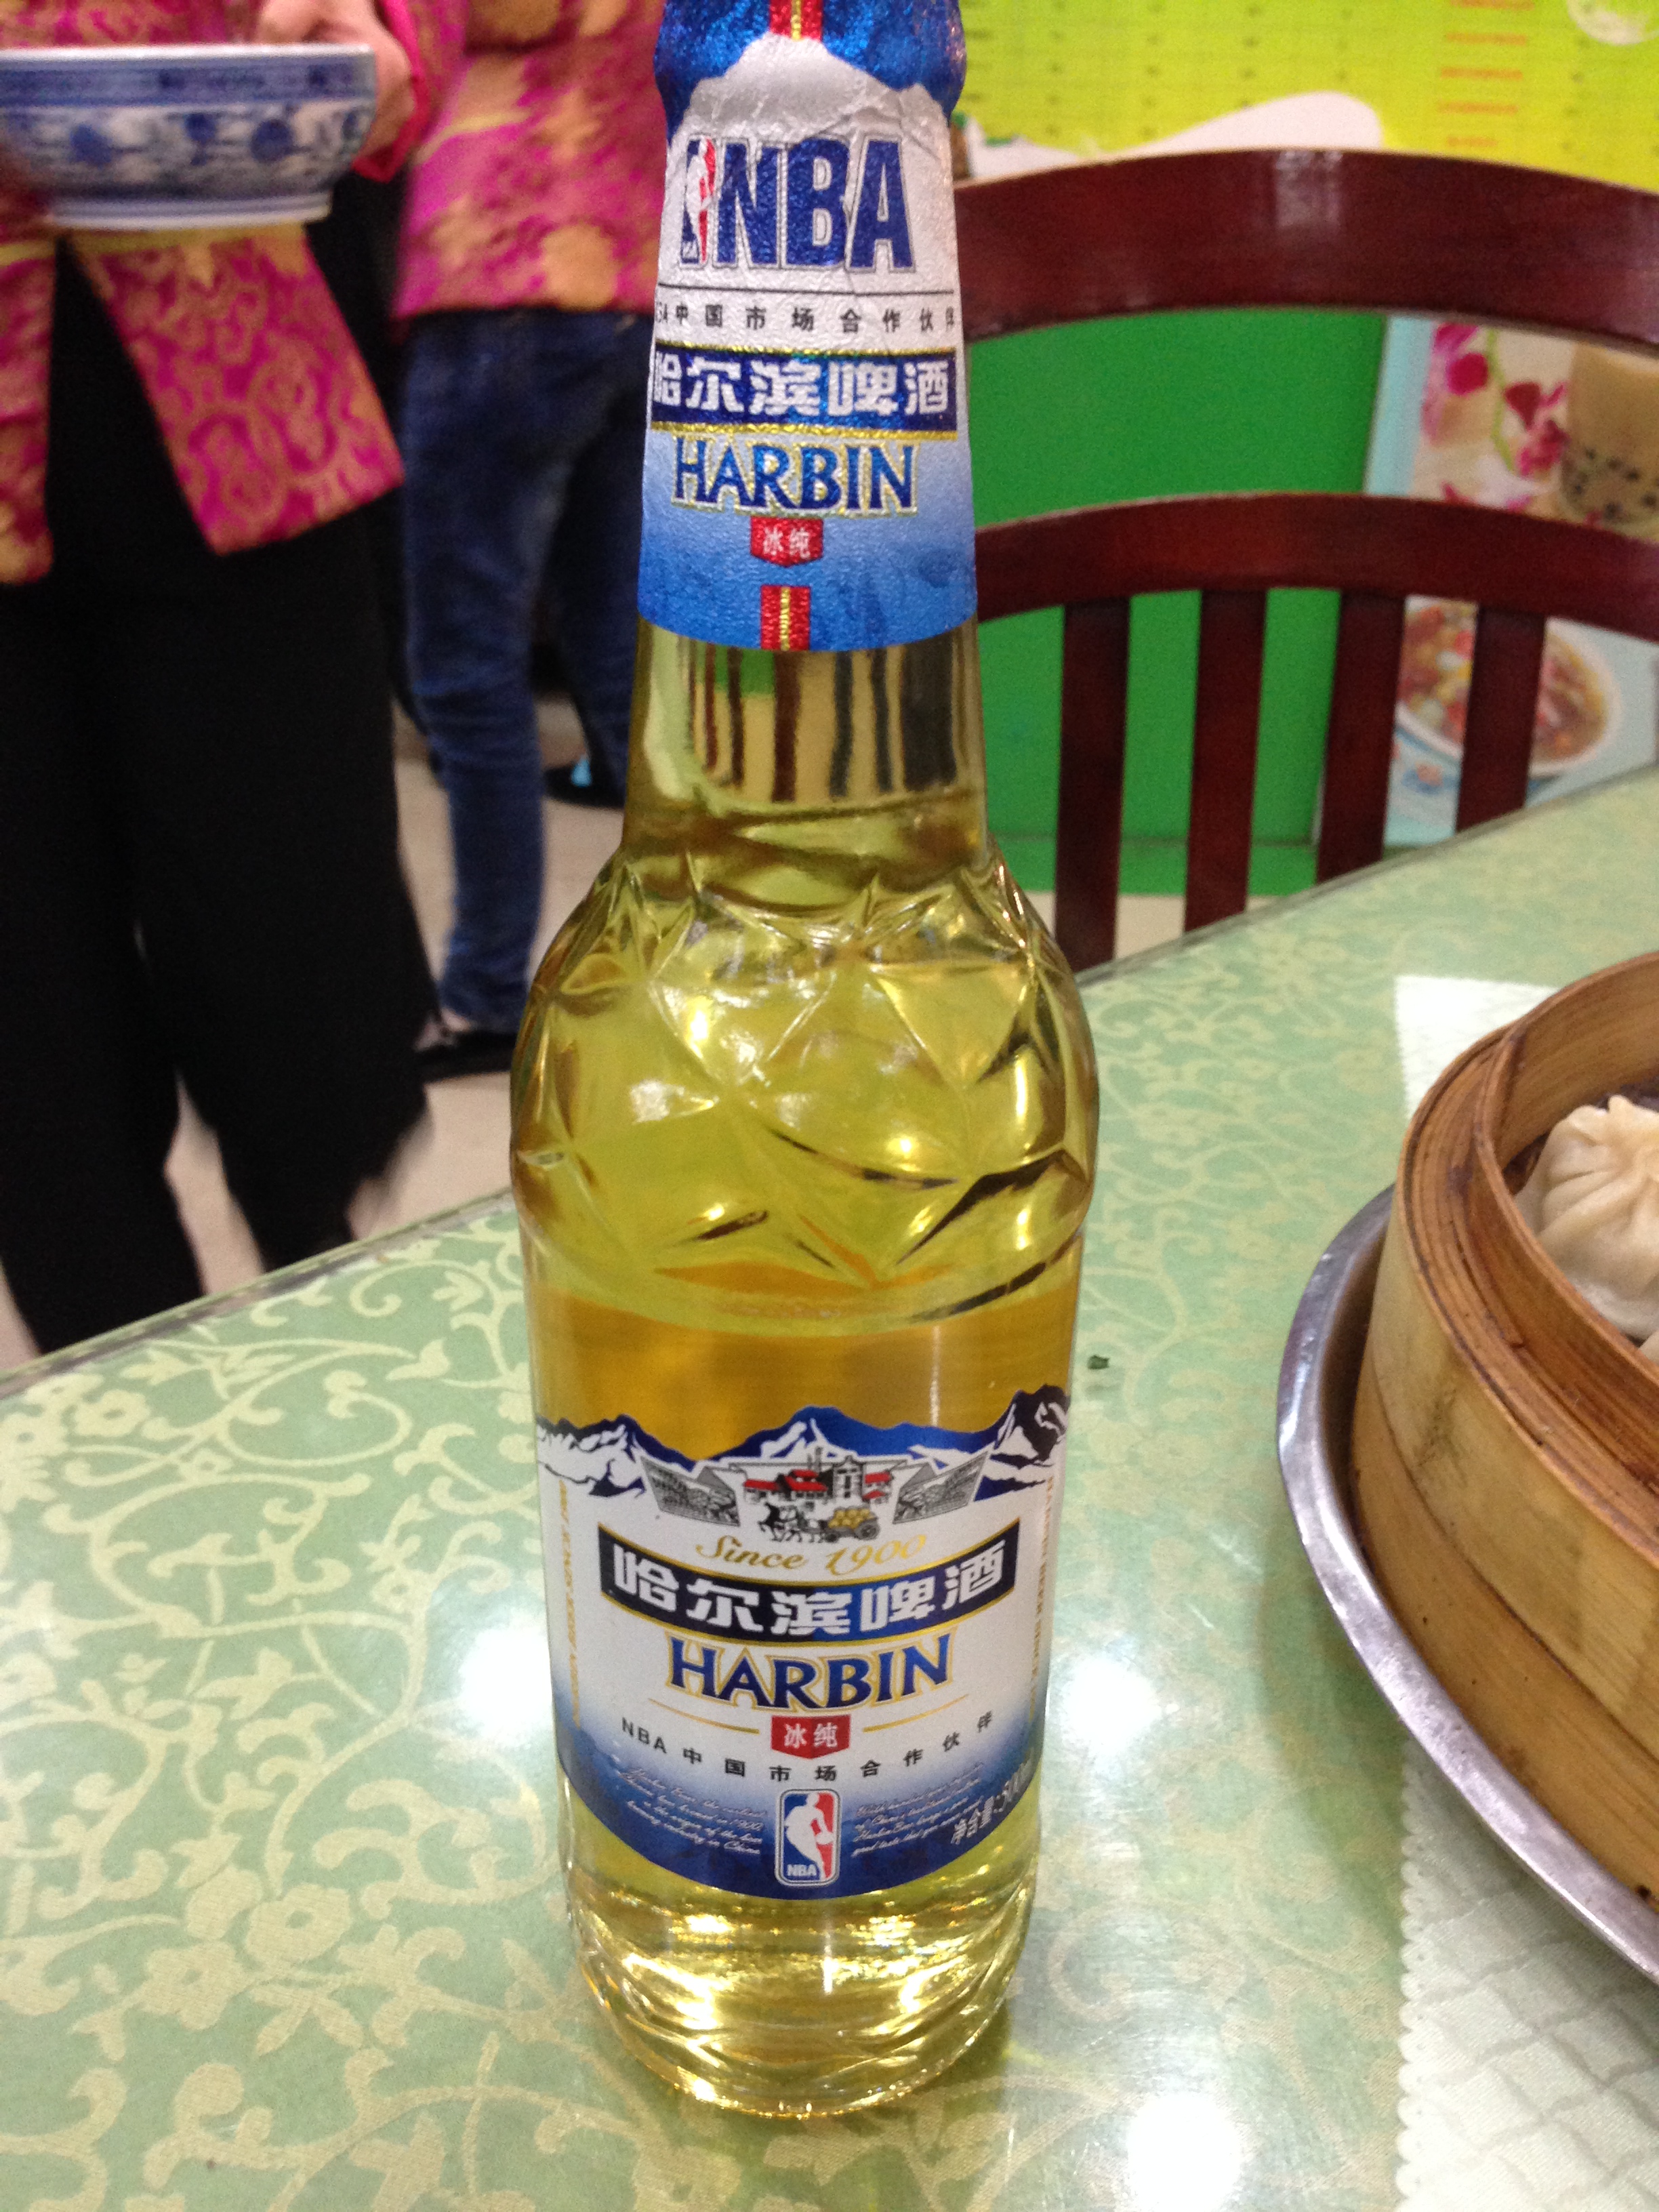 Harbin beer